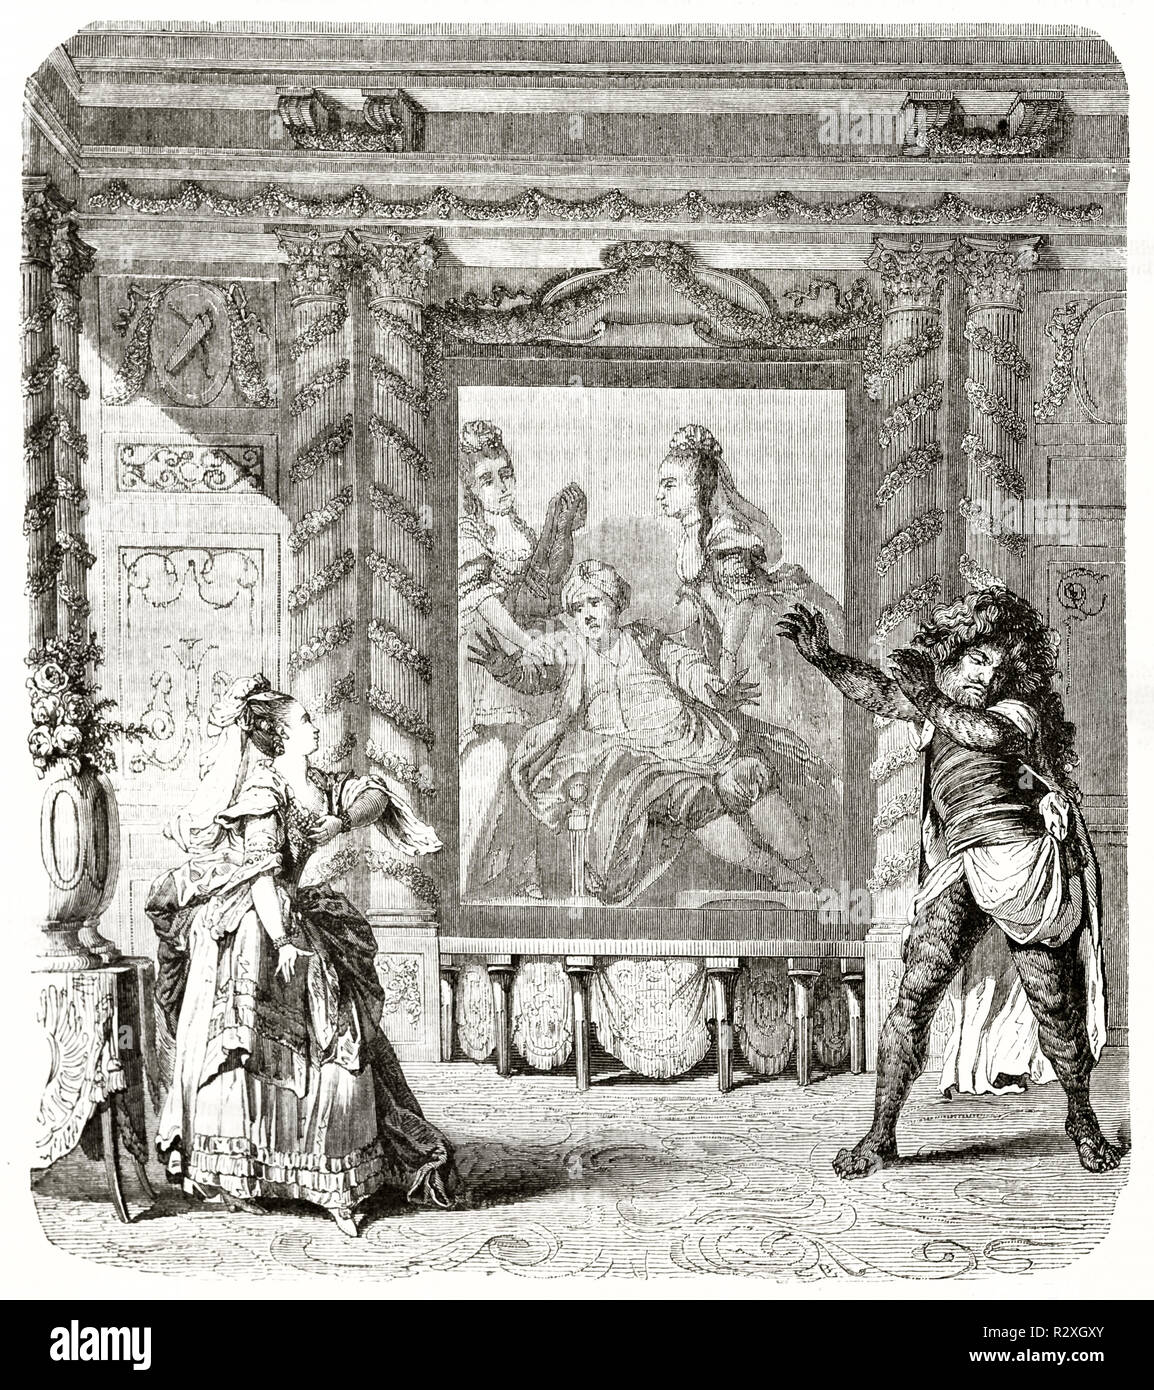 Alte Illustration einer Szene von Zemine et Azor Ballett-Oper. Vintage Radierung Stil Kunst im Magazin Pittoresque 1771 veröffentlicht Stockfoto